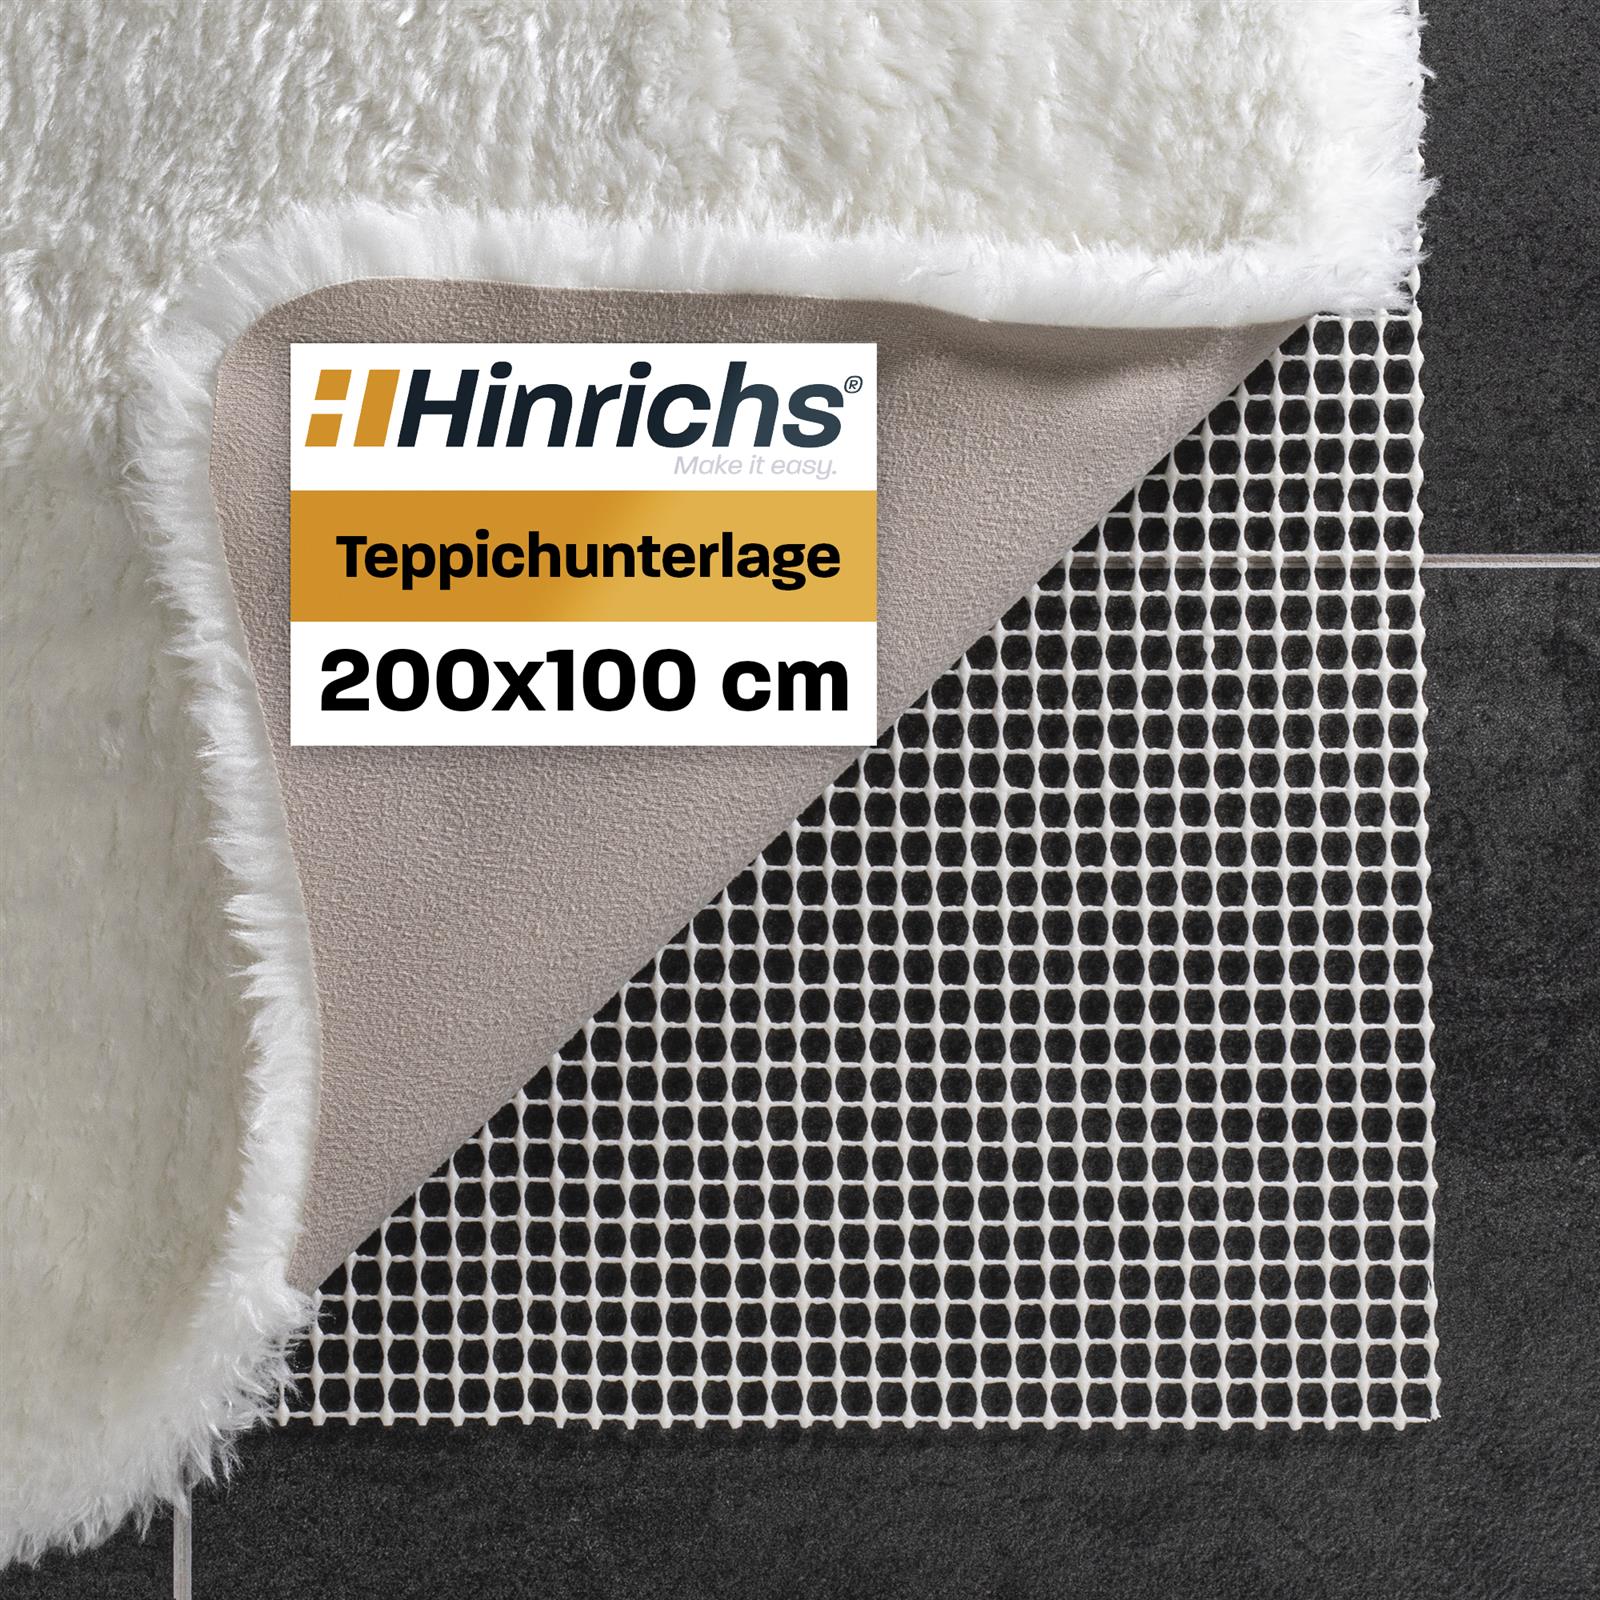 Hinrichs Teppichunterlage 200x100cm inklusive Filzklebebunkte, Teppichunterlagen, Haushalt & Zubehör